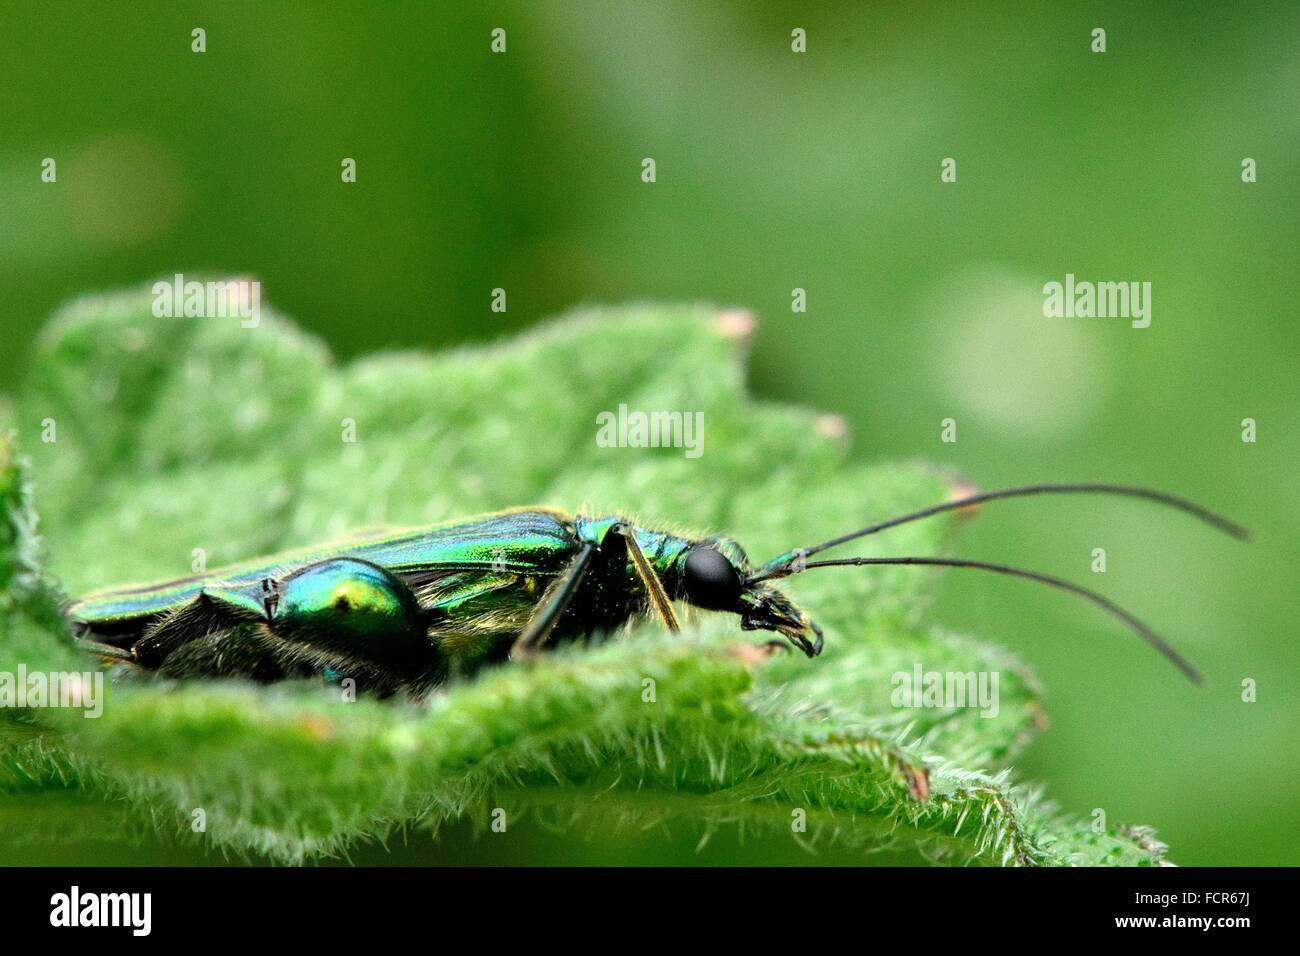 Gonflement-thighed beetle (Oedemera nobilis) profil. Un scarabée mâle dans la famille Oedemeridae, avec des fémurs Banque D'Images